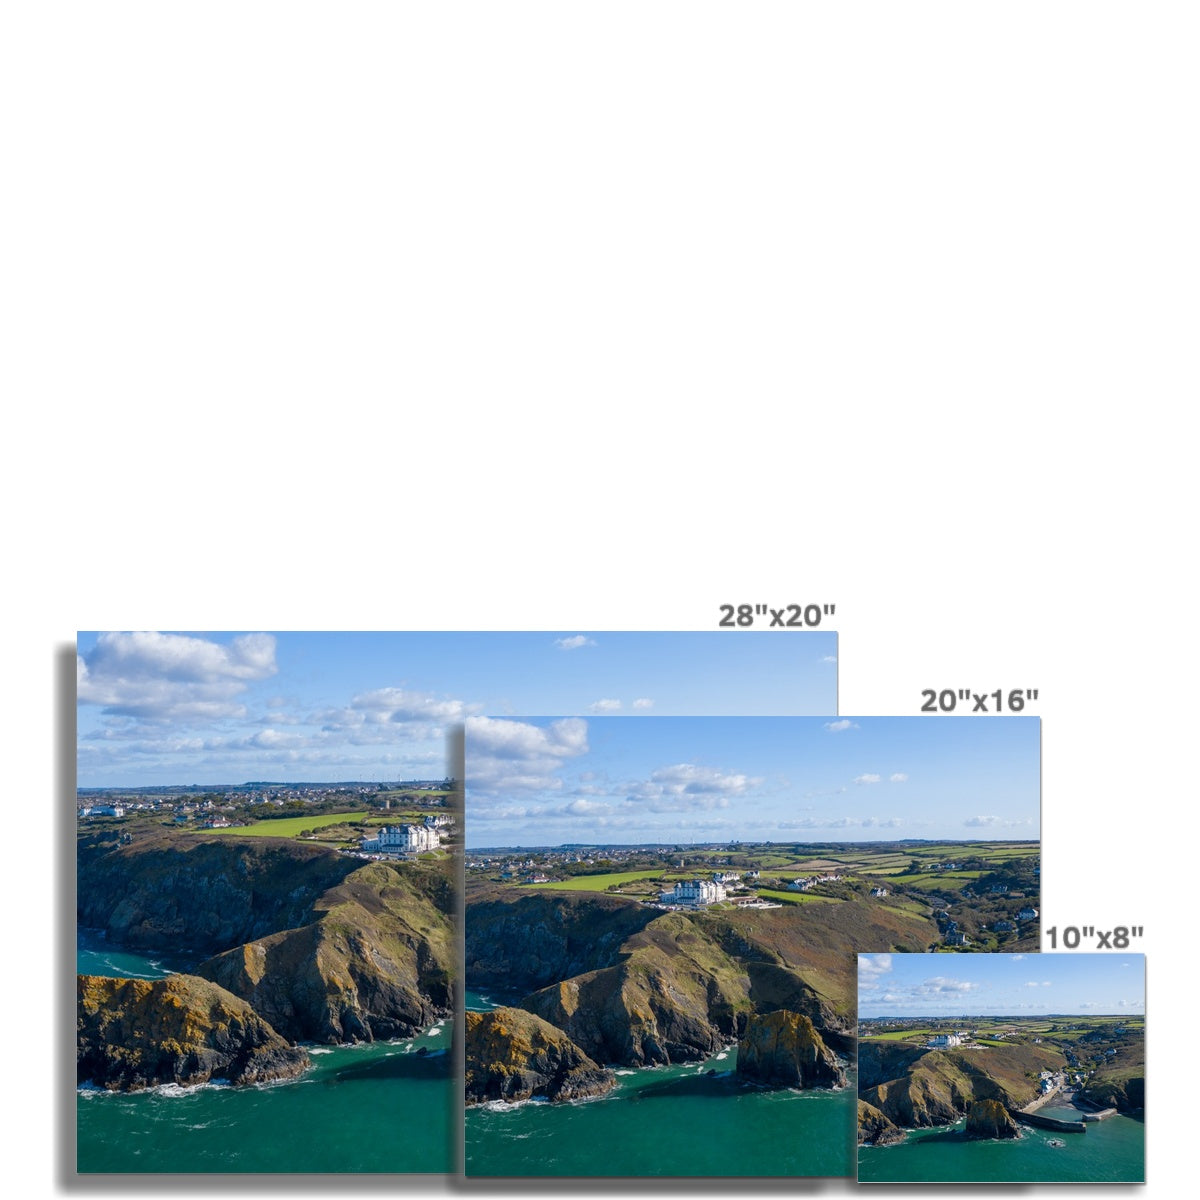 mullion cove landscape picture sizes